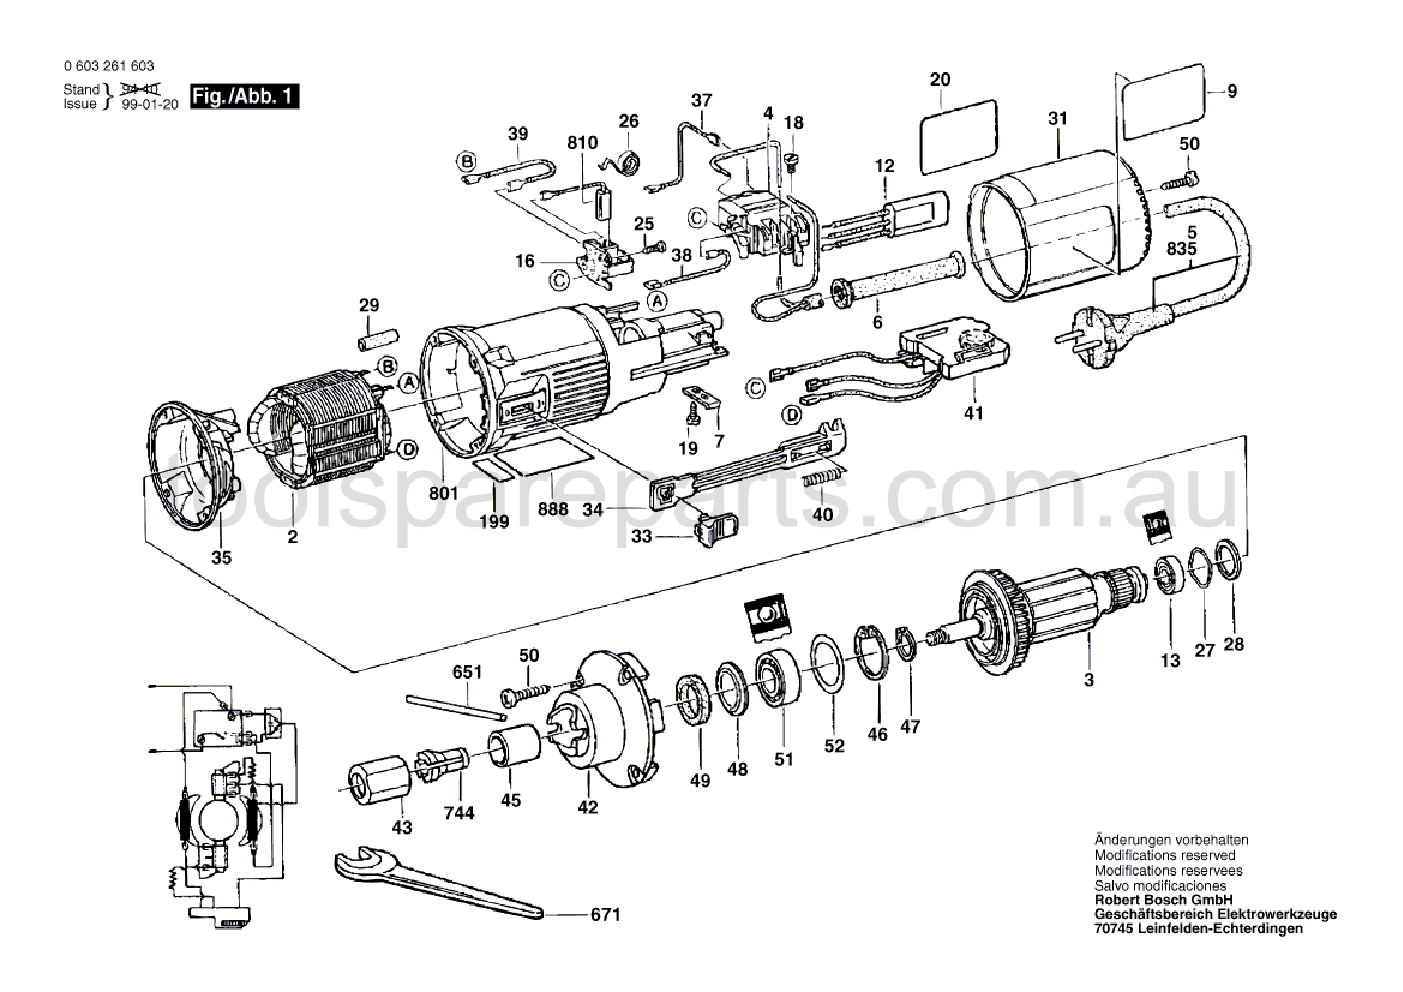 Bosch POF 600 ACE 0603261637  Diagram 1